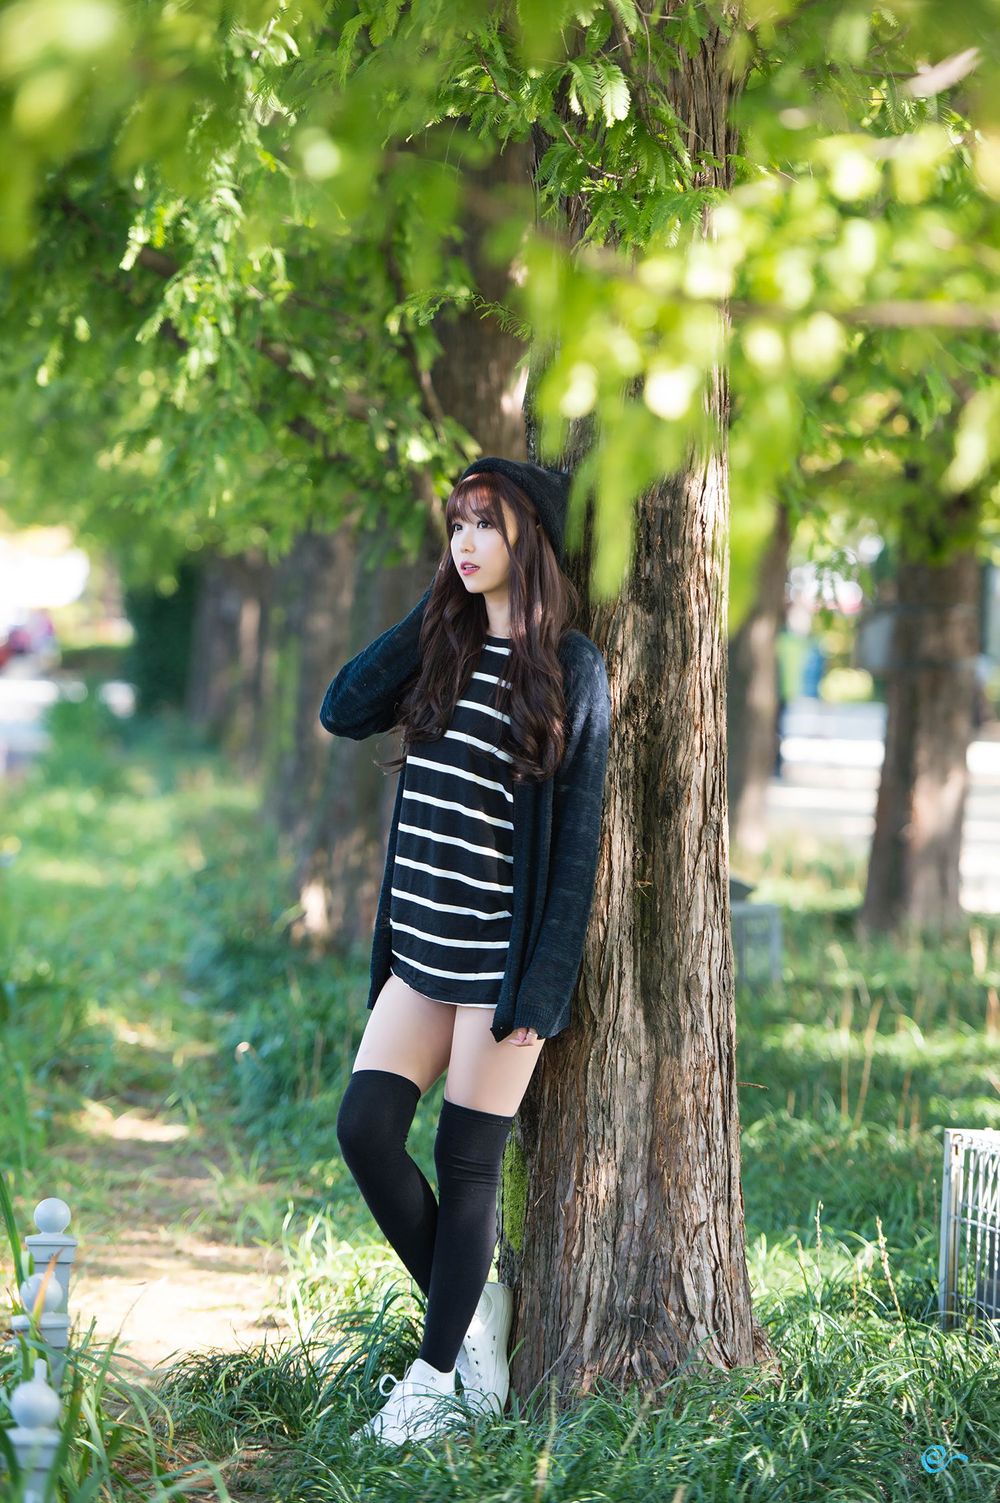 韩国知名美女李恩慧可爱长筒袜微卷长发系列清新外拍